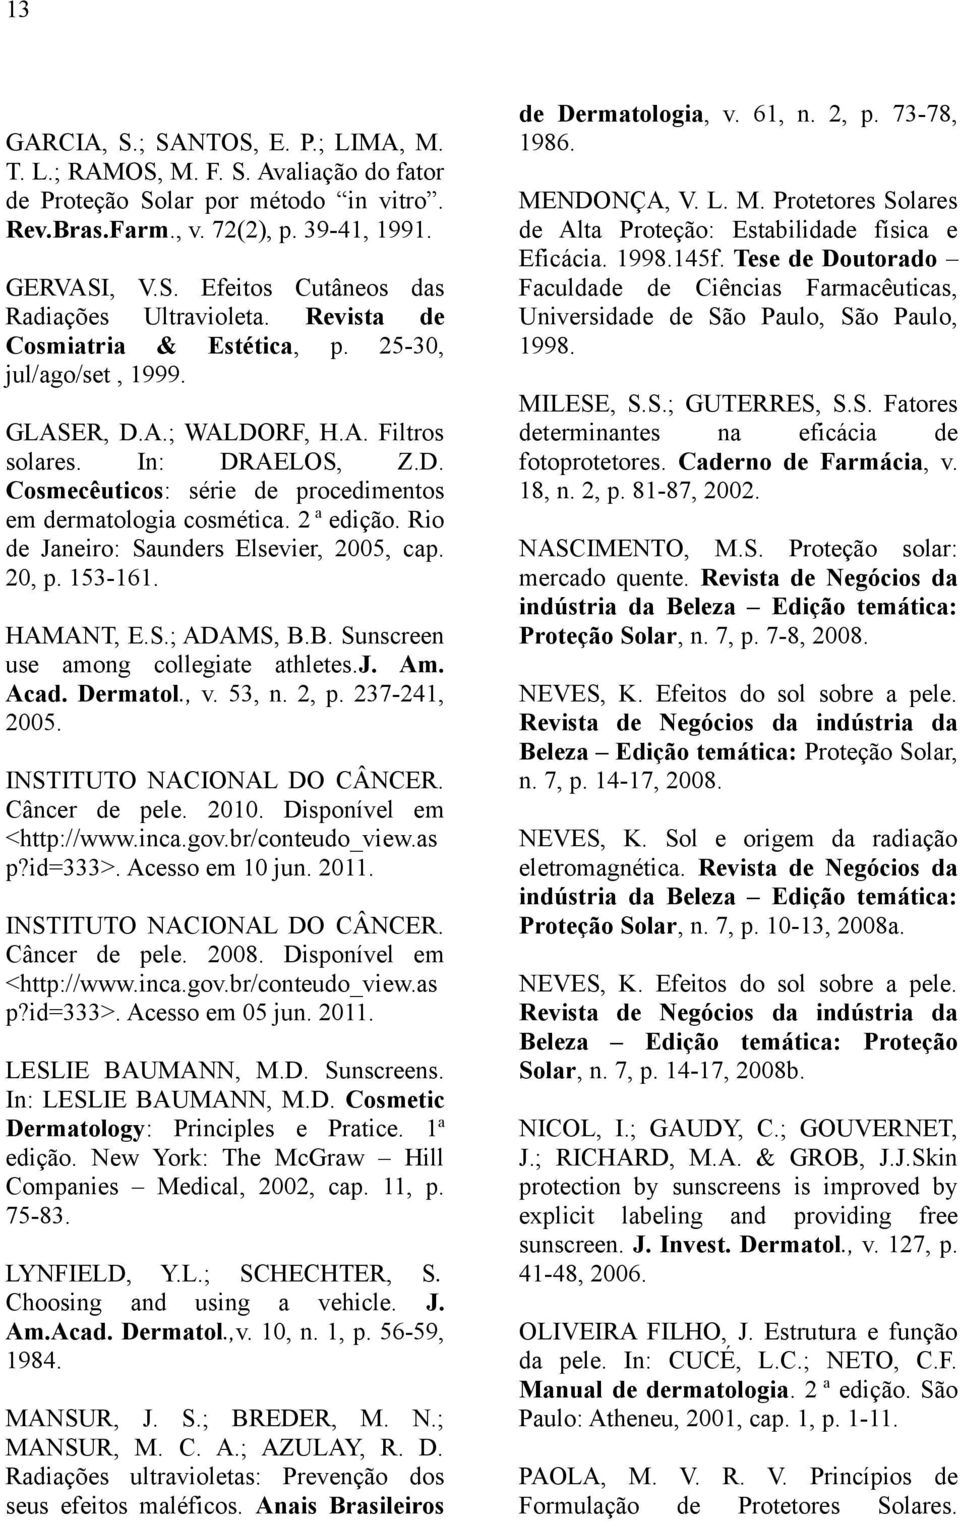 2 a edição. Rio de Janeiro: Saunders Elsevier, 2005, cap. 20, p. 153-161. HAMANT, E.S.; ADAMS, B.B. Sunscreen use among collegiate athletes.j. Am. Acad. Dermatol., v. 53, n. 2, p. 237-241, 2005.